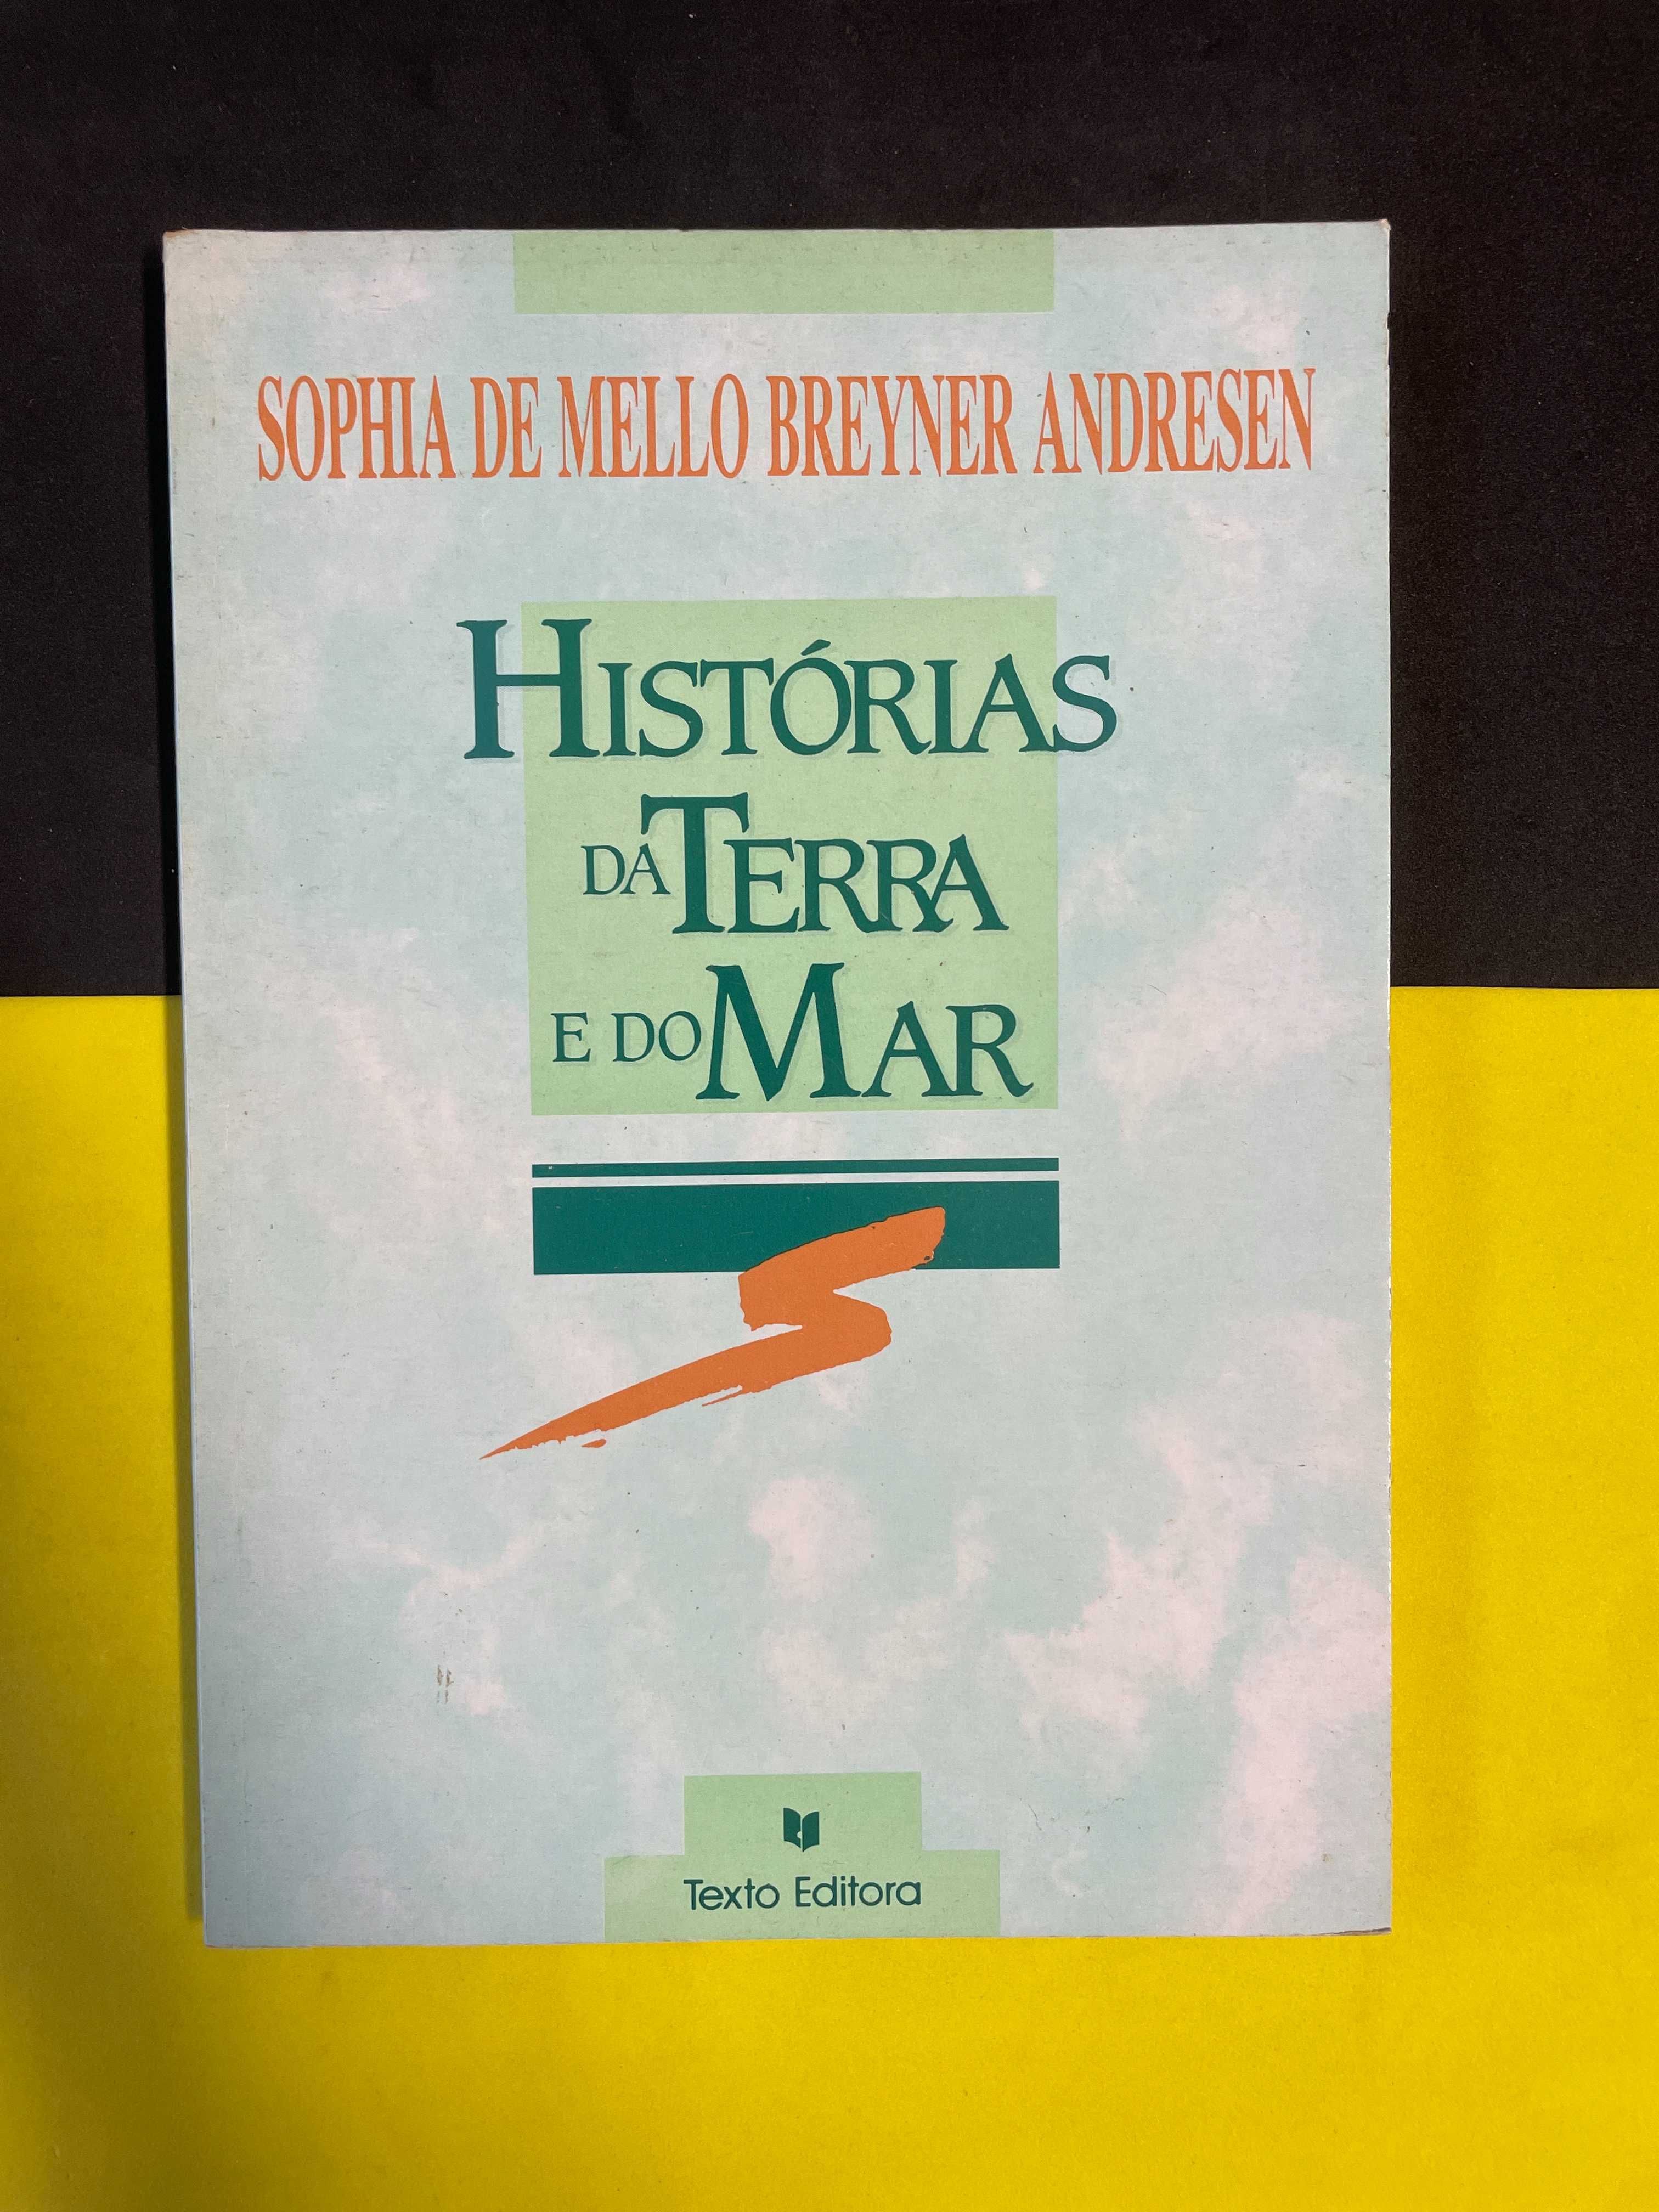 Sophia de Mello Breyner Andresen - Histórias da da terra e do mar